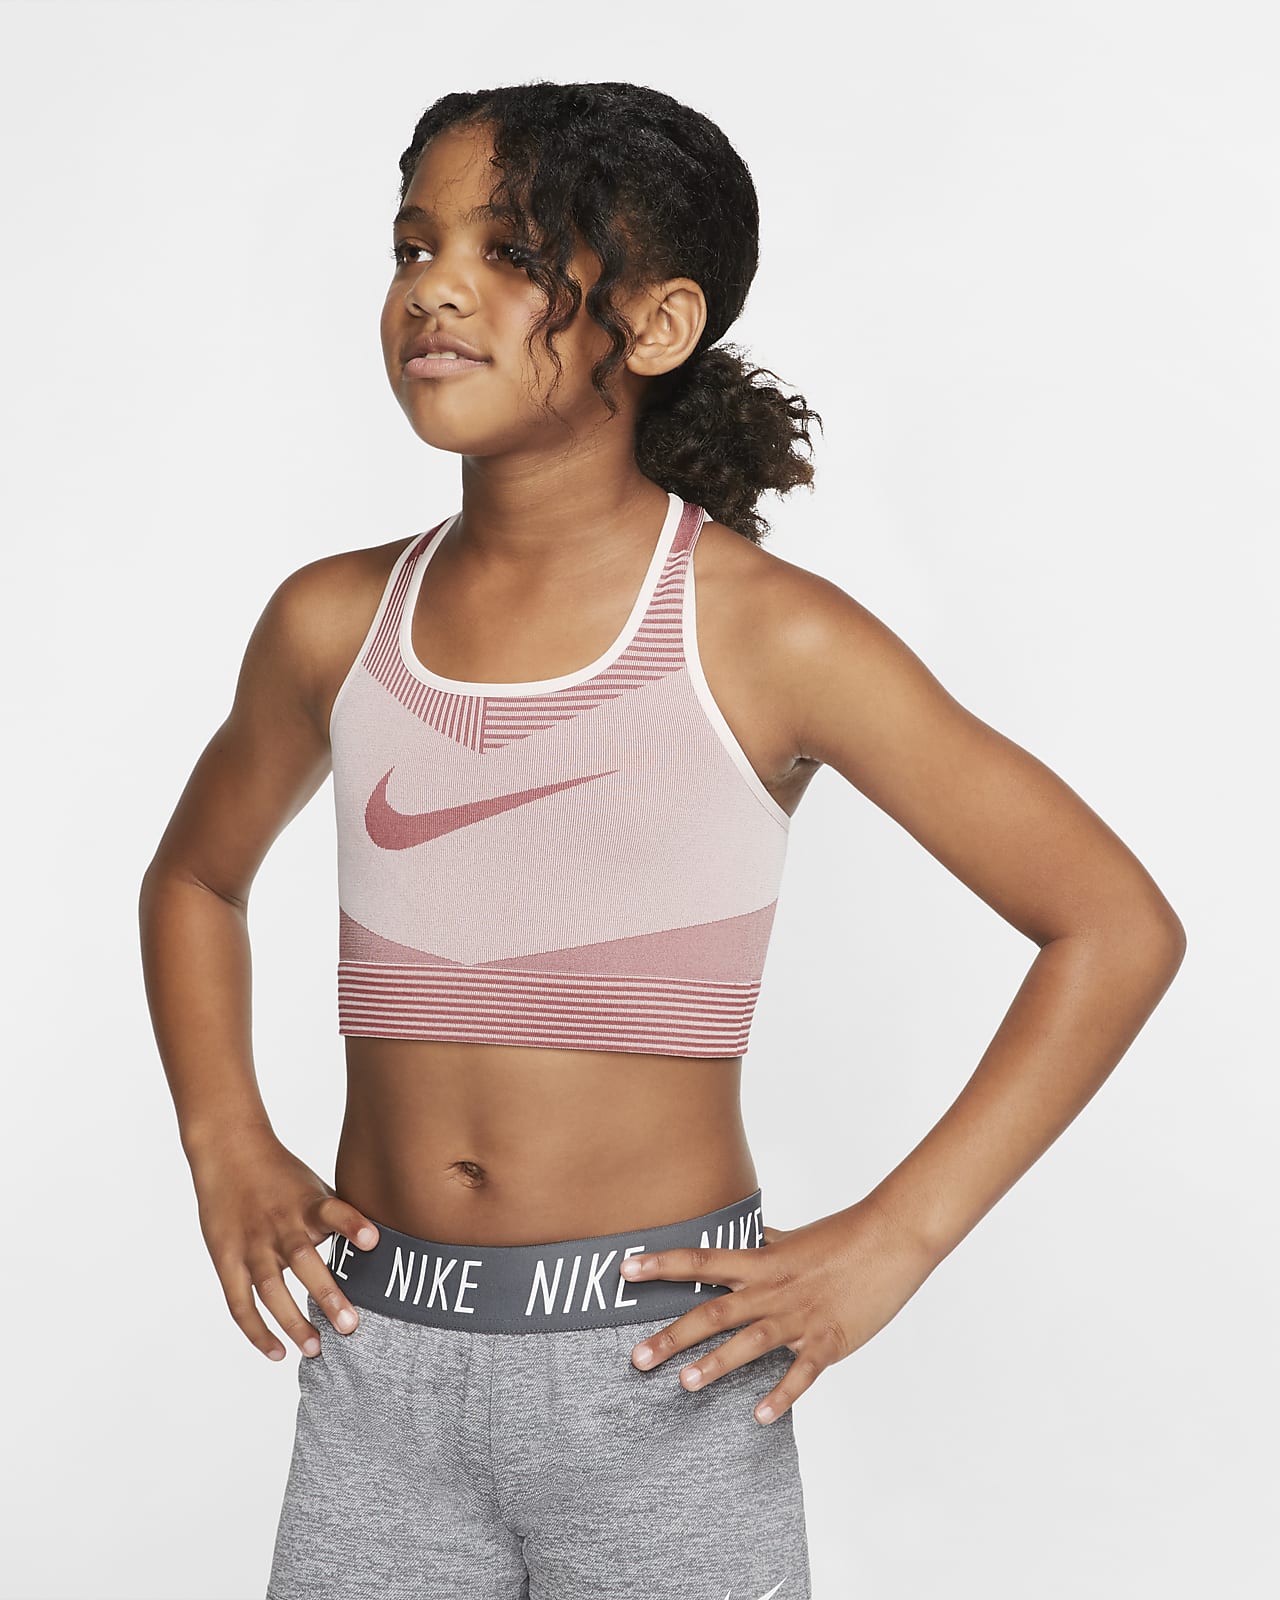 Топики для девочек 12 лет для лета. Спортивный топ бра Nike. Спортивный топ для девочки. Топик для девочки 12. Топик для девочки 10 лет.